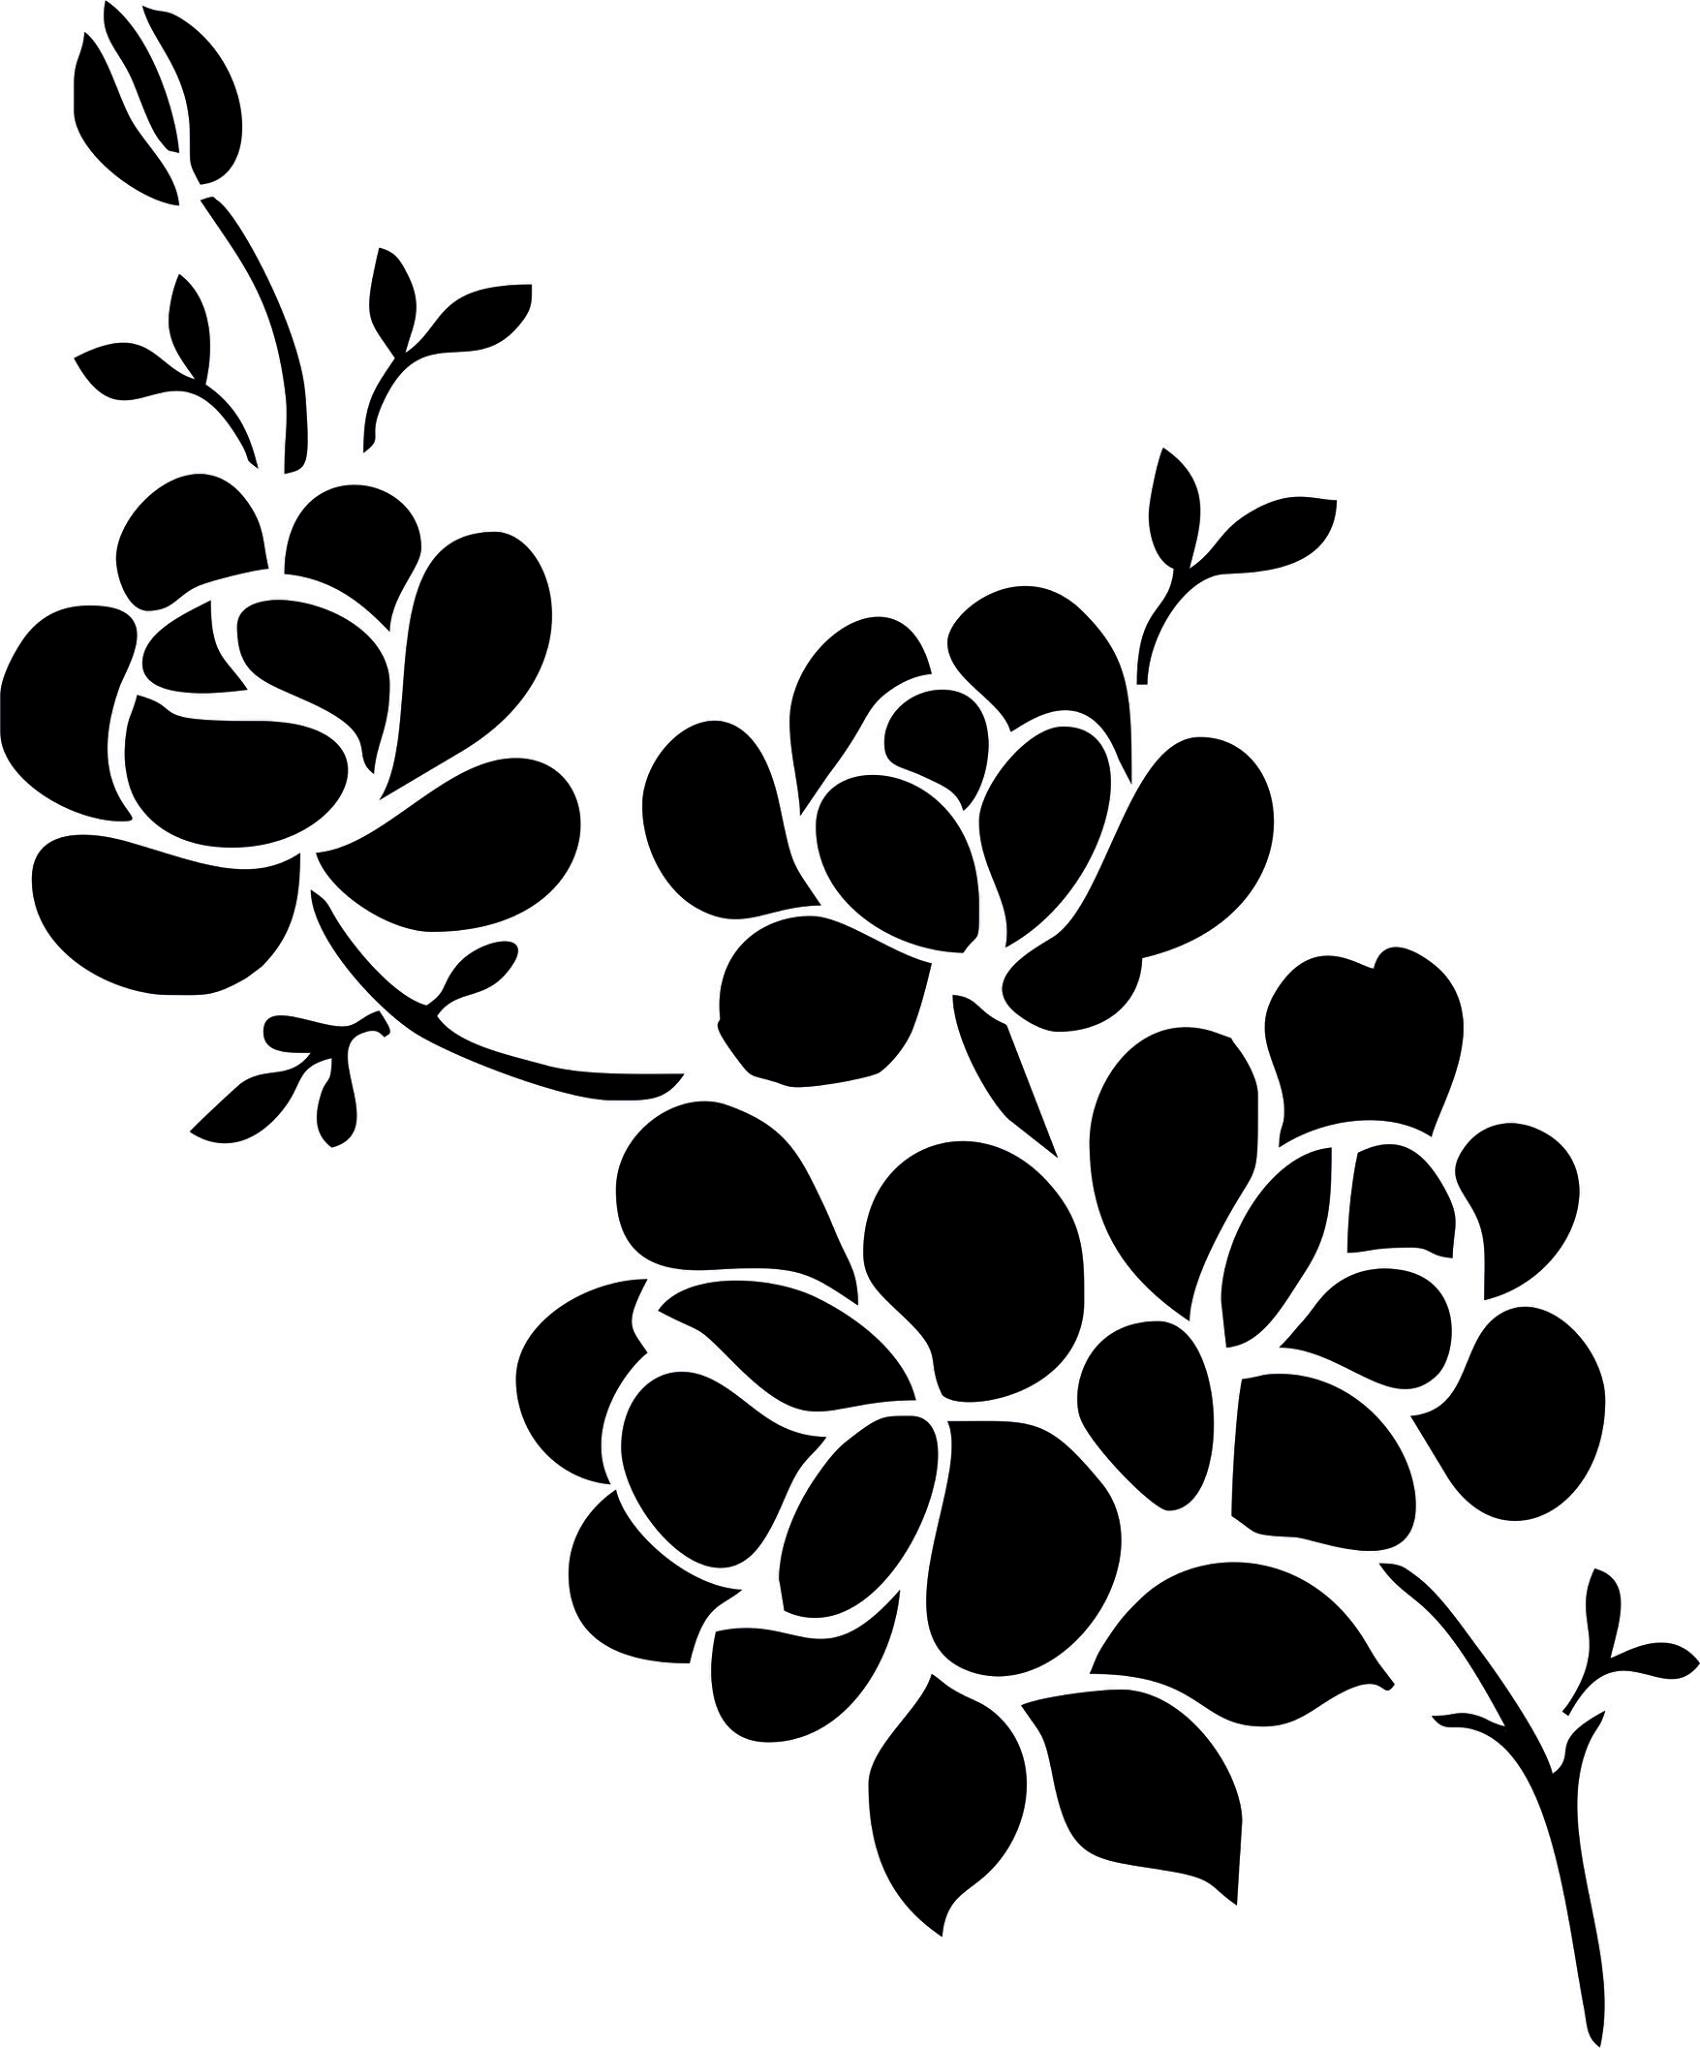 Elegant Black And White Flower Vector Art jpg Image Free Download